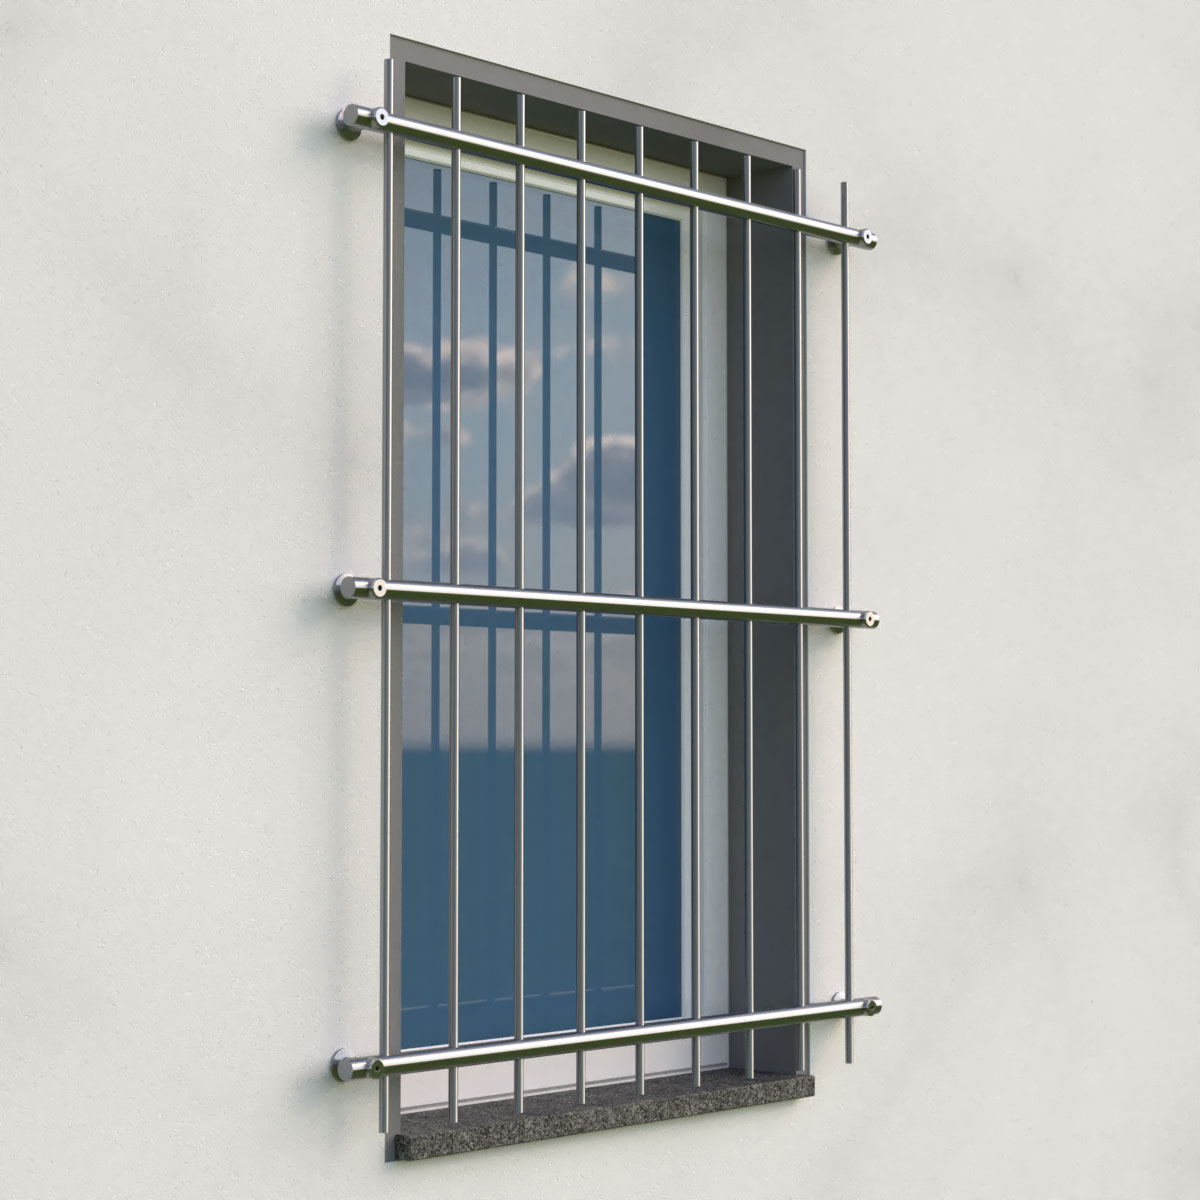 Einbruchschutz bei Fenstern  Sicherheitsvorkehrungen bei Fenster und Türen  »  » Fenster und Türen made in Baselland